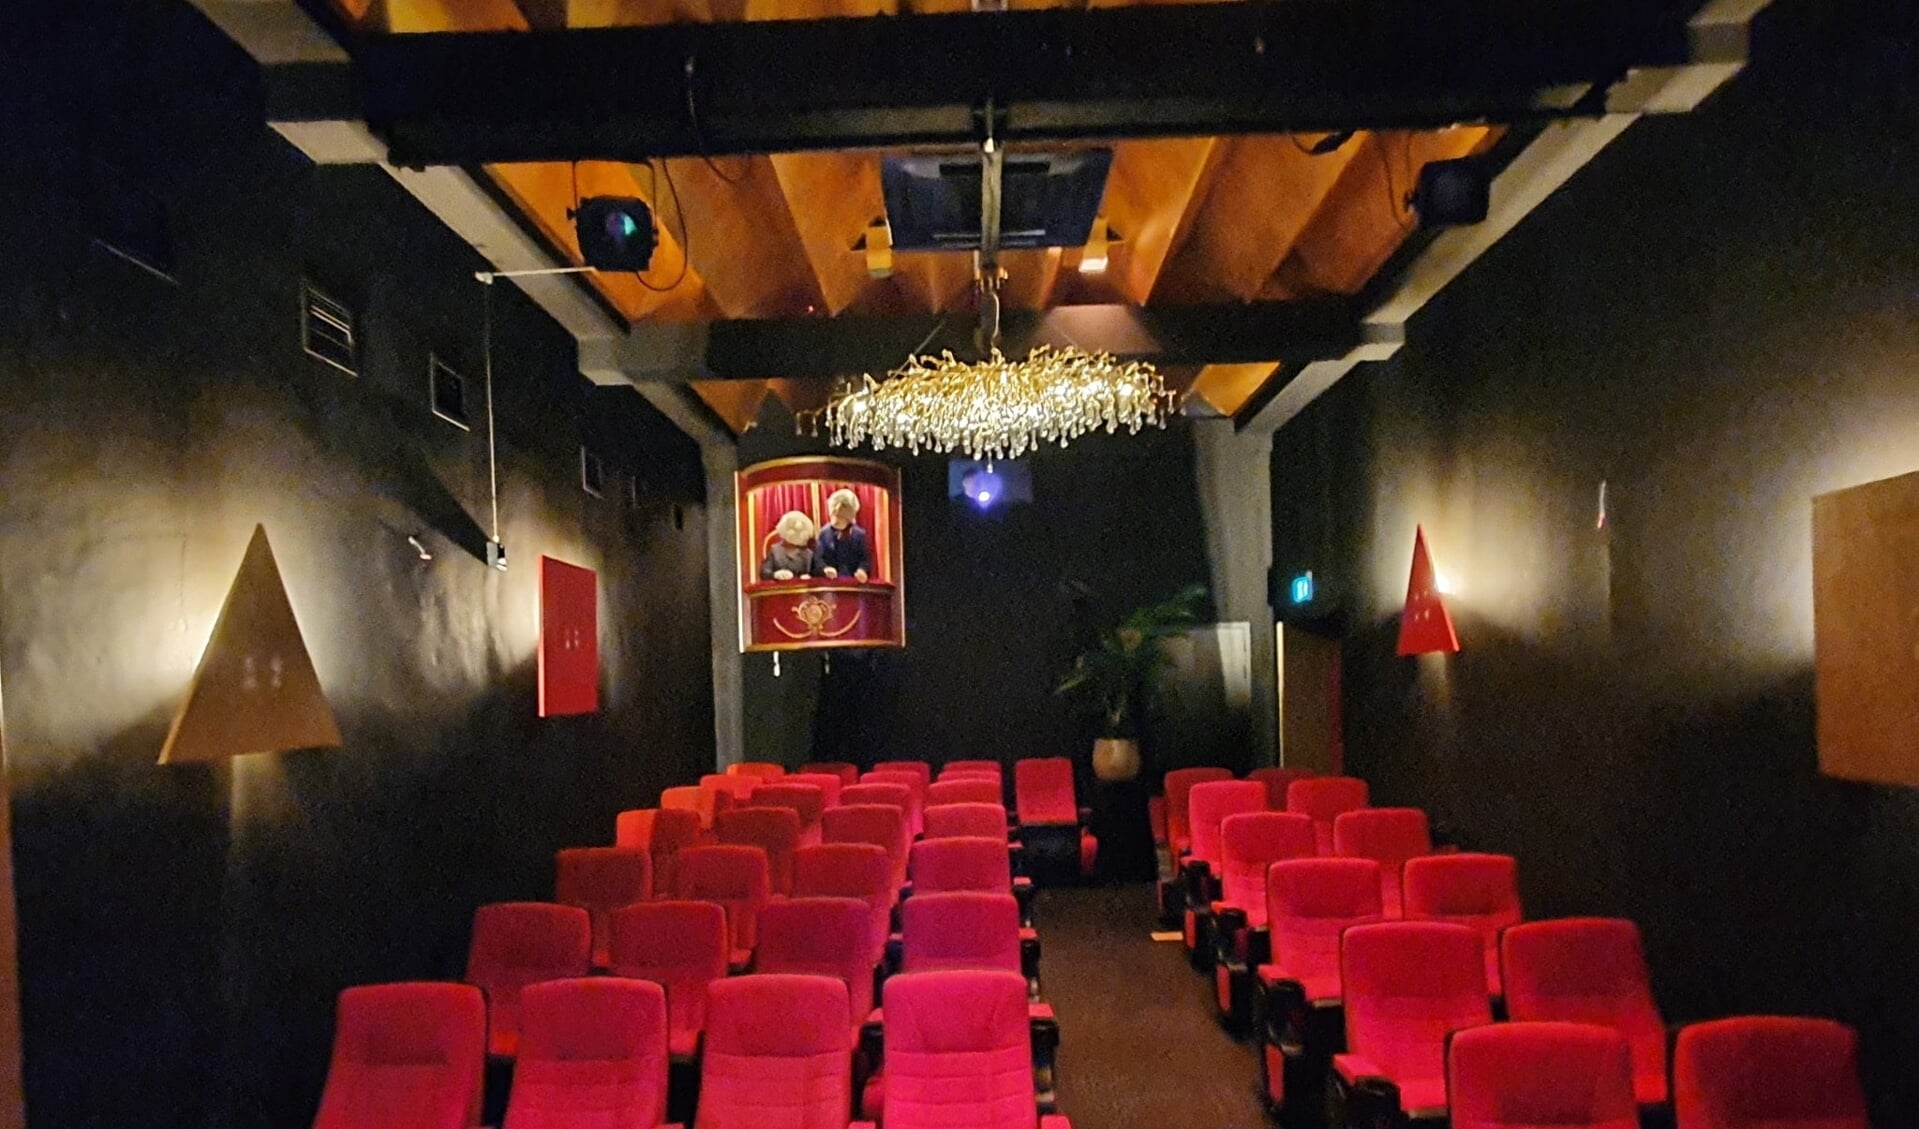 Het theatertje biedt plaats aan iets meer dan veertig personen (eigen foto).